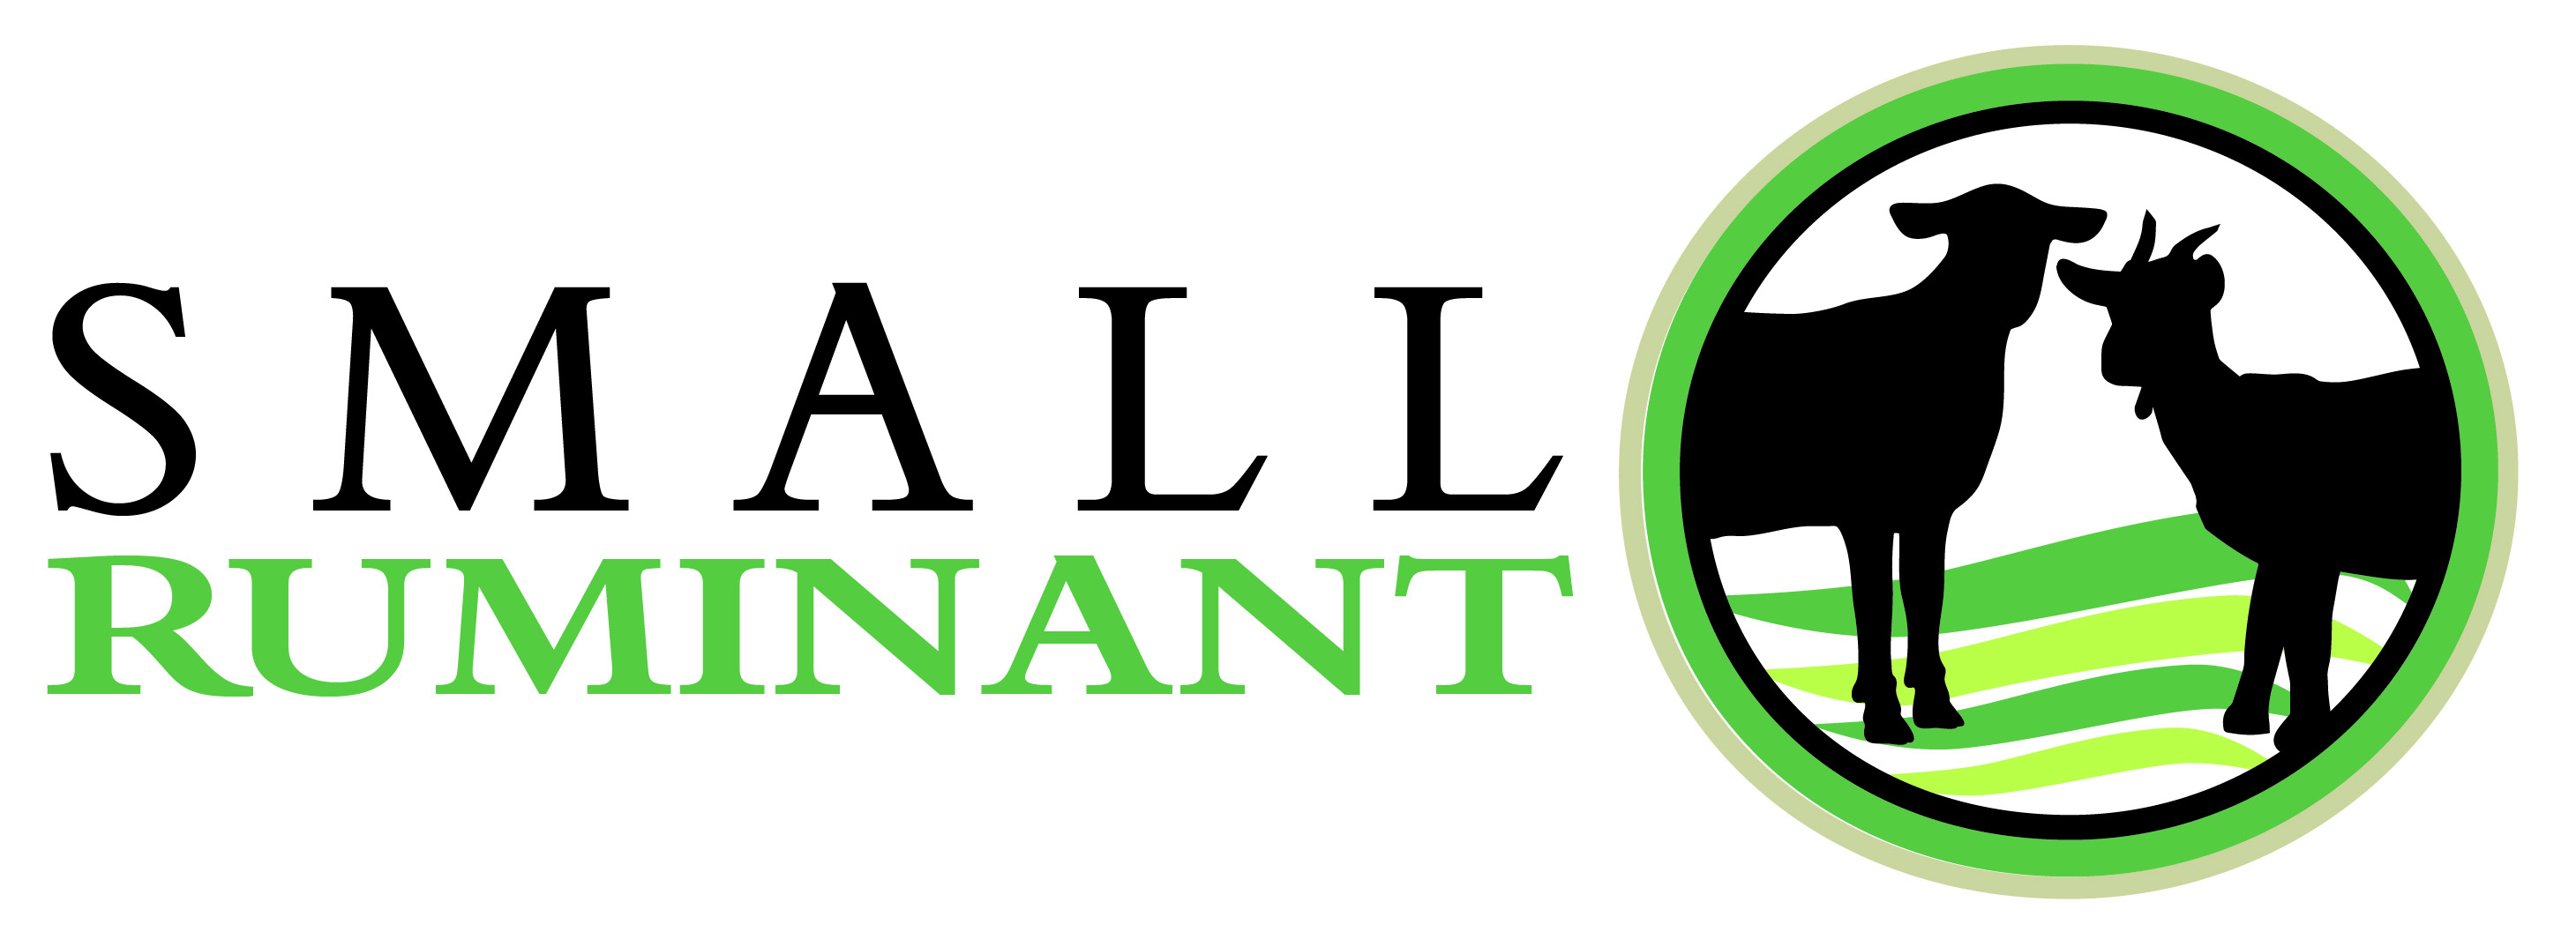 Small Ruminant Logo